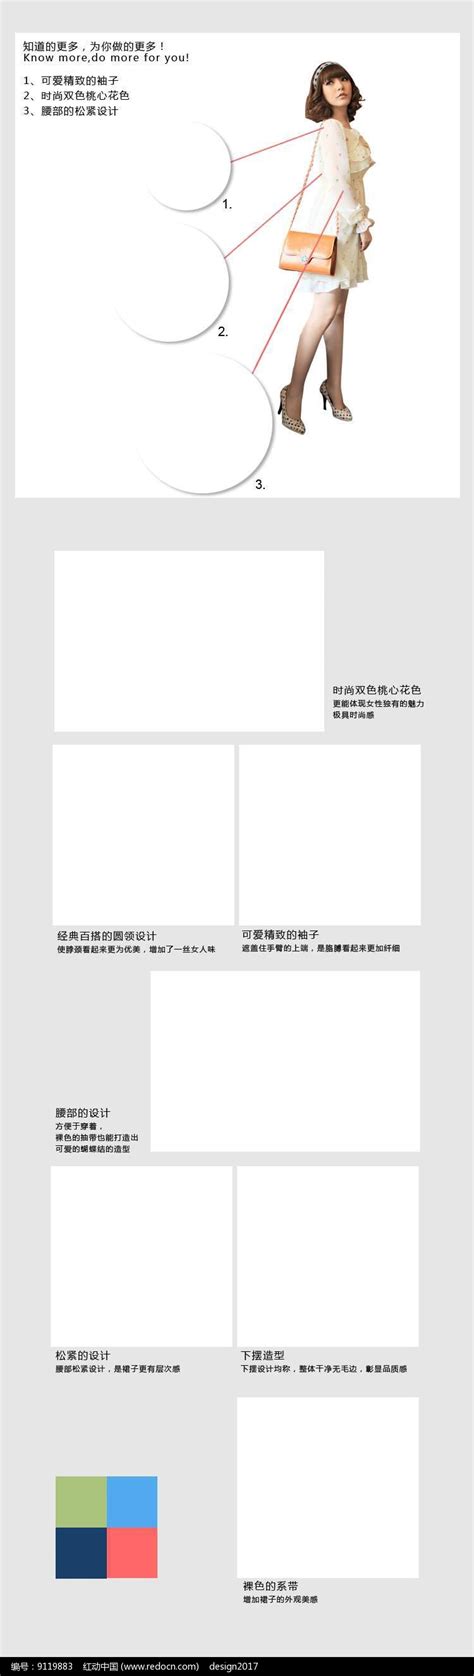 淘宝女装详情页设计模版PSD素材免费下载_红动中国